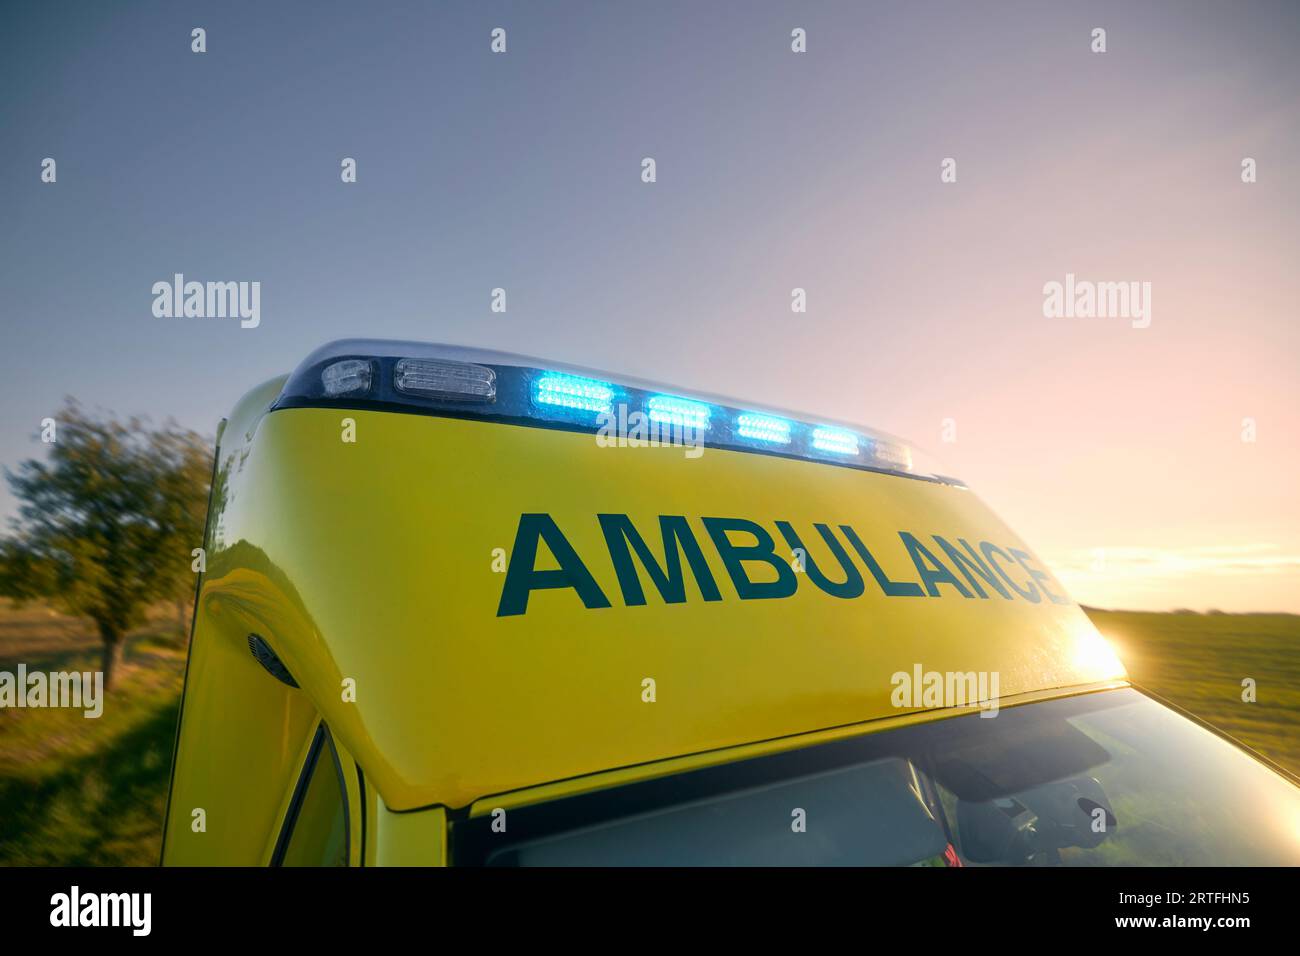 Sirena del servizio medico di emergenza contro il cielo al tramonto. Lampeggiatore sul tetto dell'ambulanza. Temi salvataggio, urgenza e assistenza sanitaria. Foto Stock